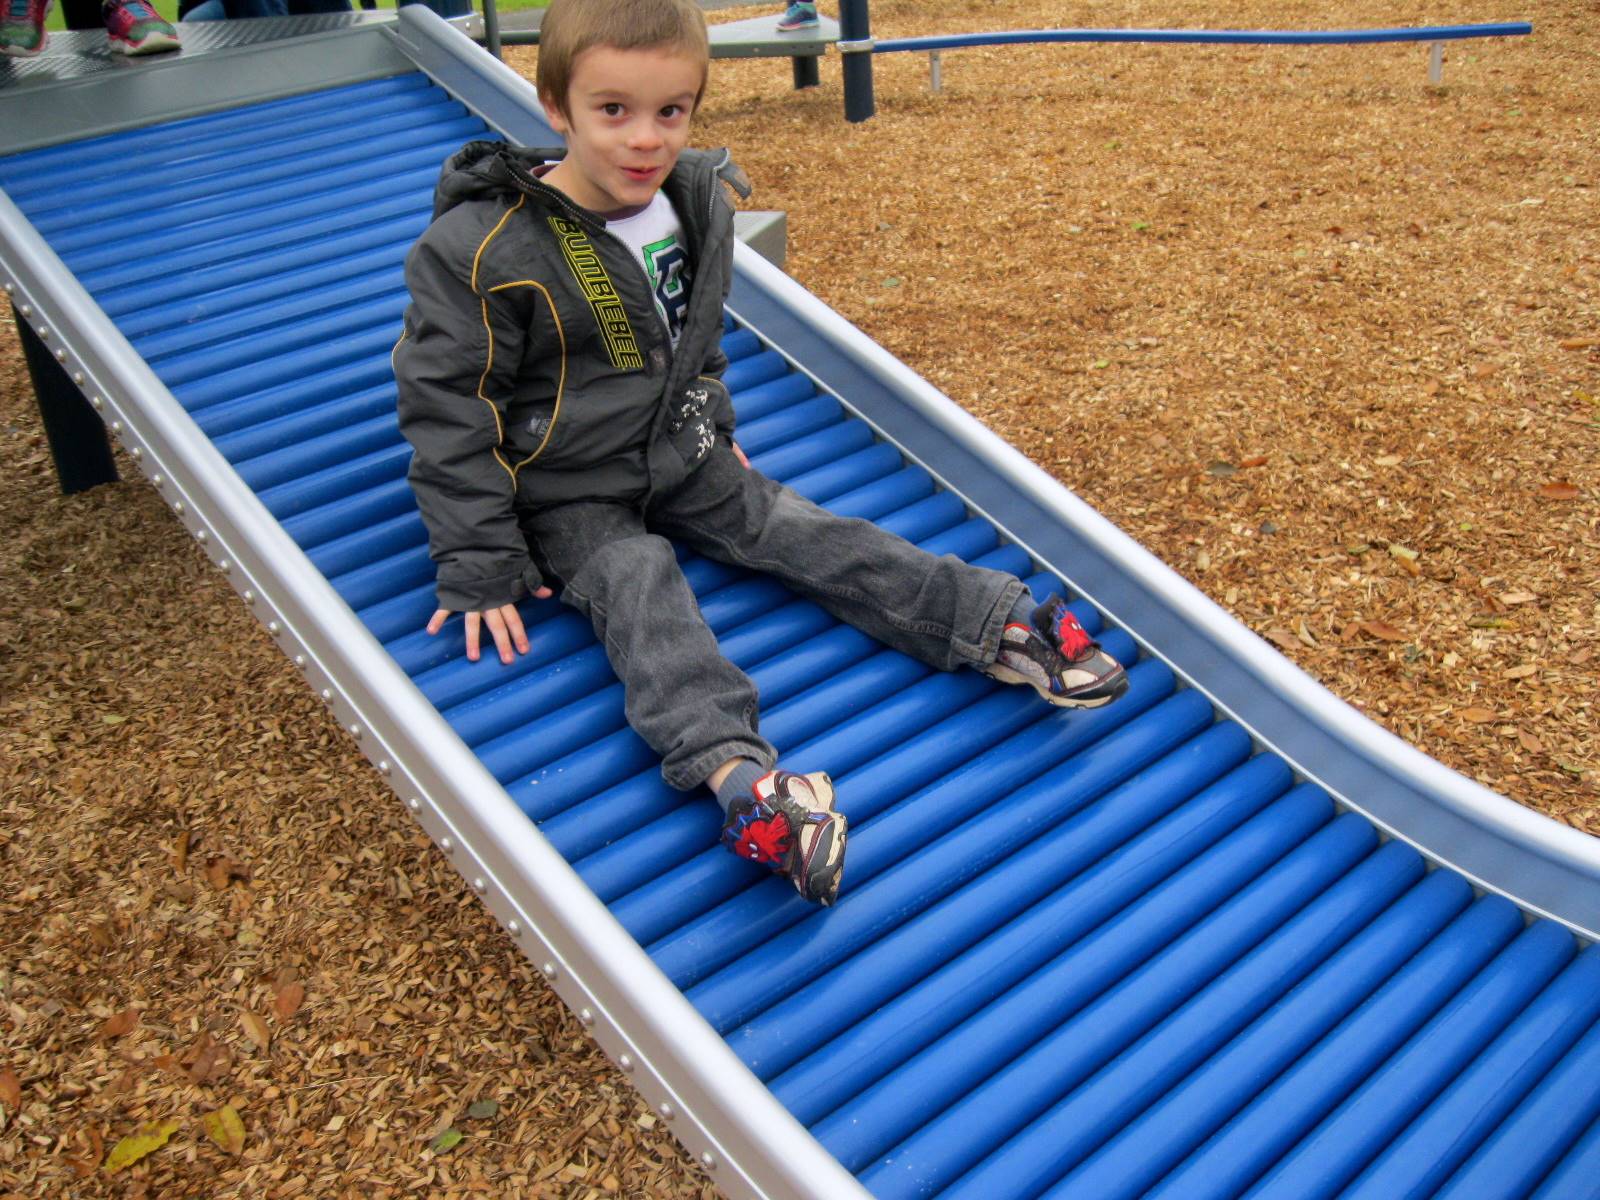 A child on a slide.